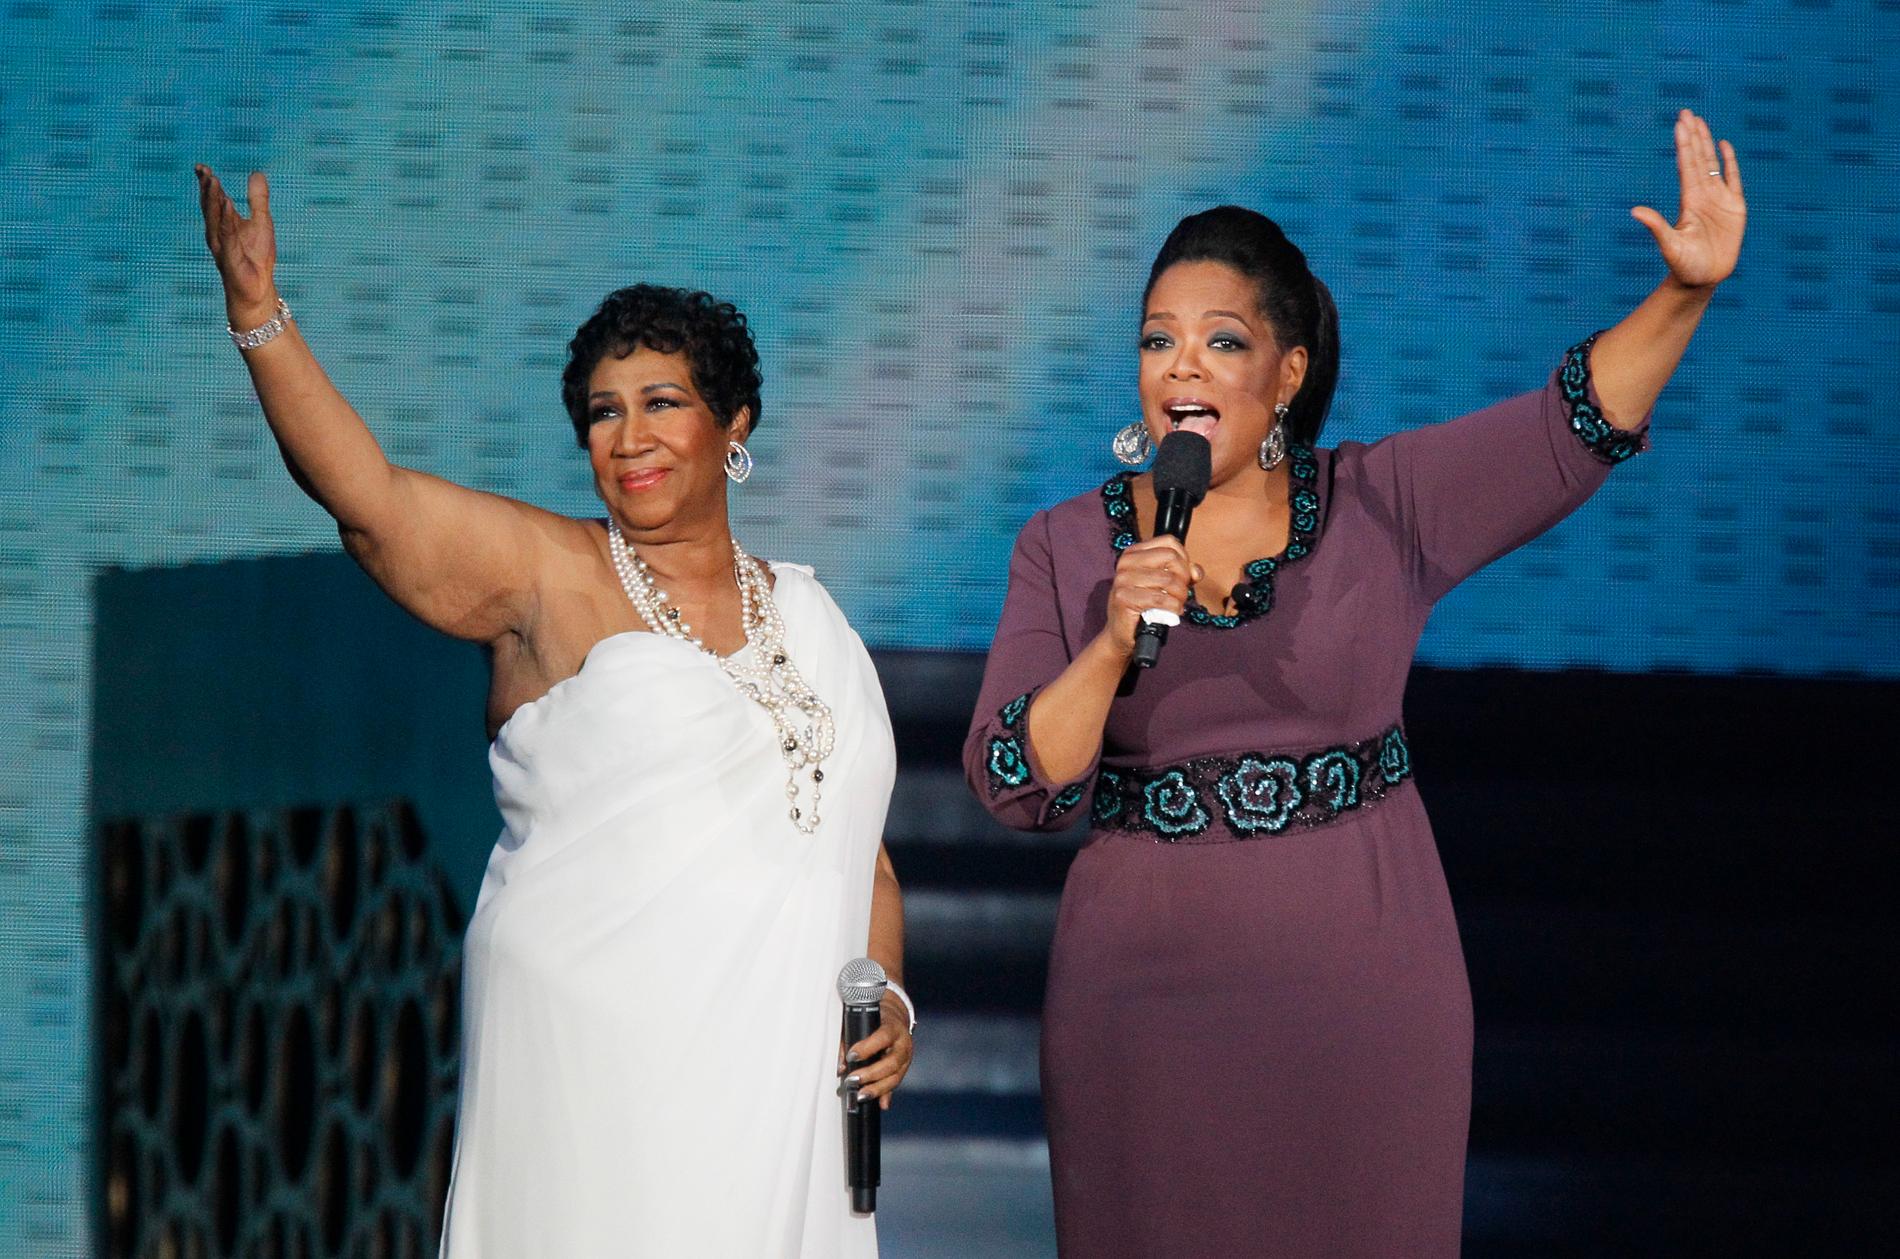 Franklin tillsammans med Oprah Winfrey vid tv-stjärnans avskedsföreställningar i Chicago i maj 2011.